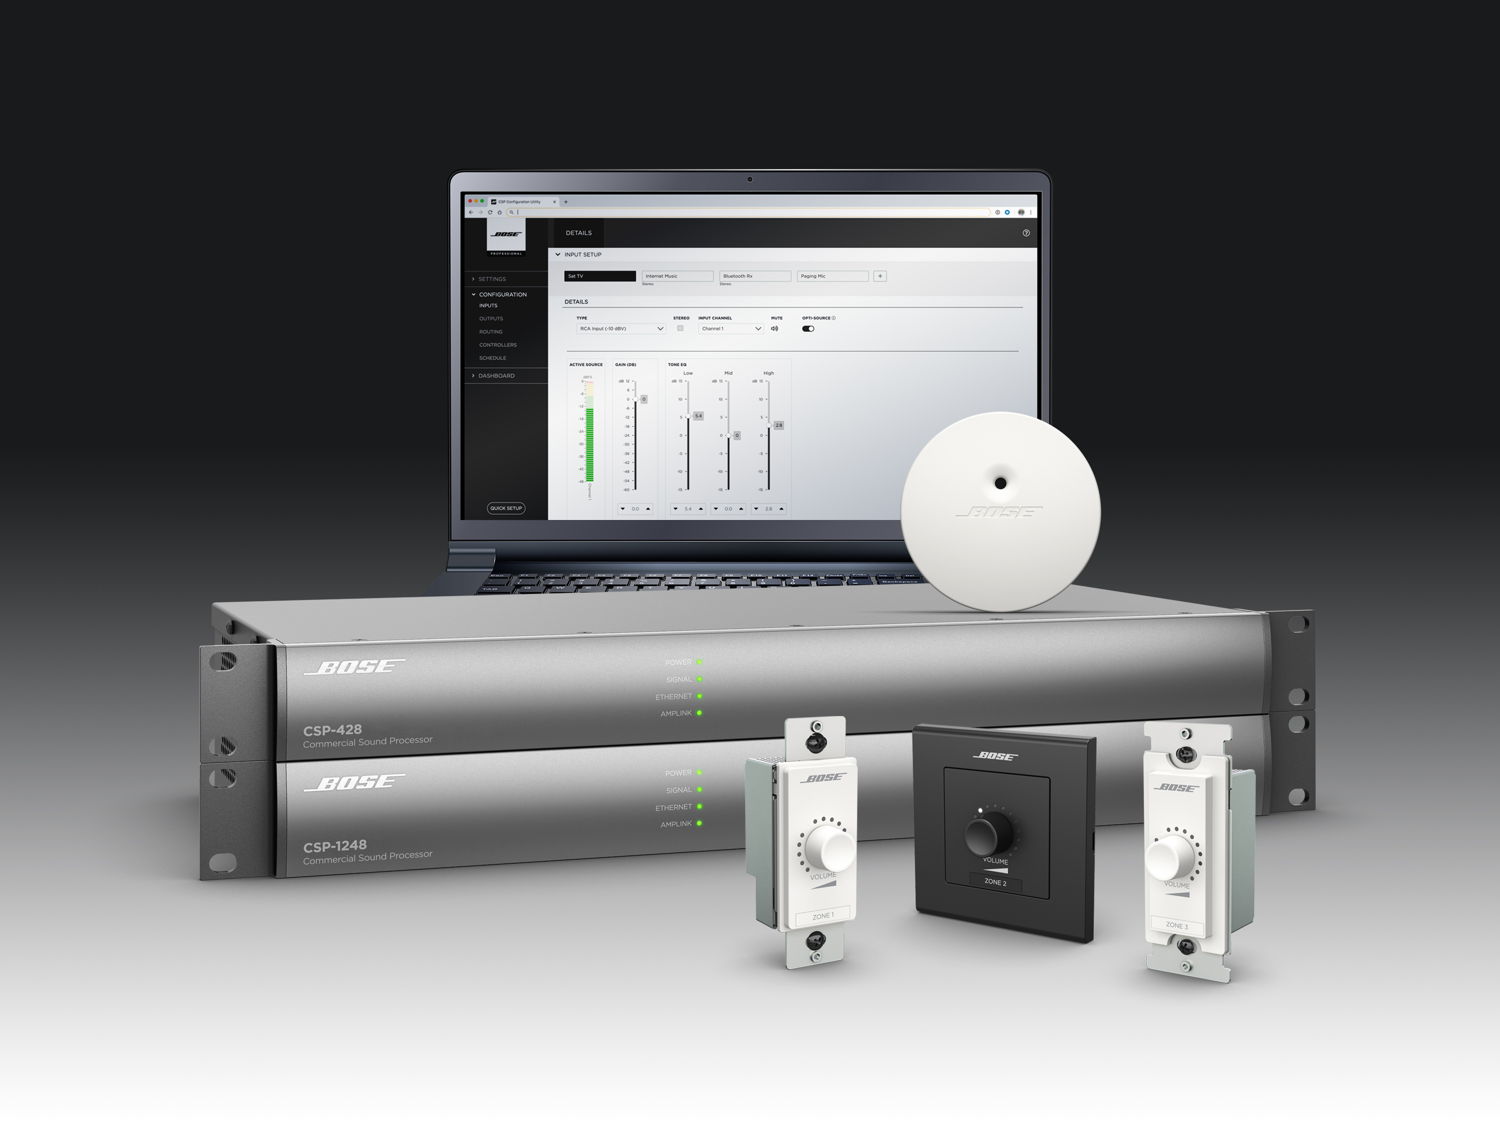 Los nuevos modelos de CSP de Bose simplifican el funcionamiento y la configuración del sistema de sonido para entorno comercial.